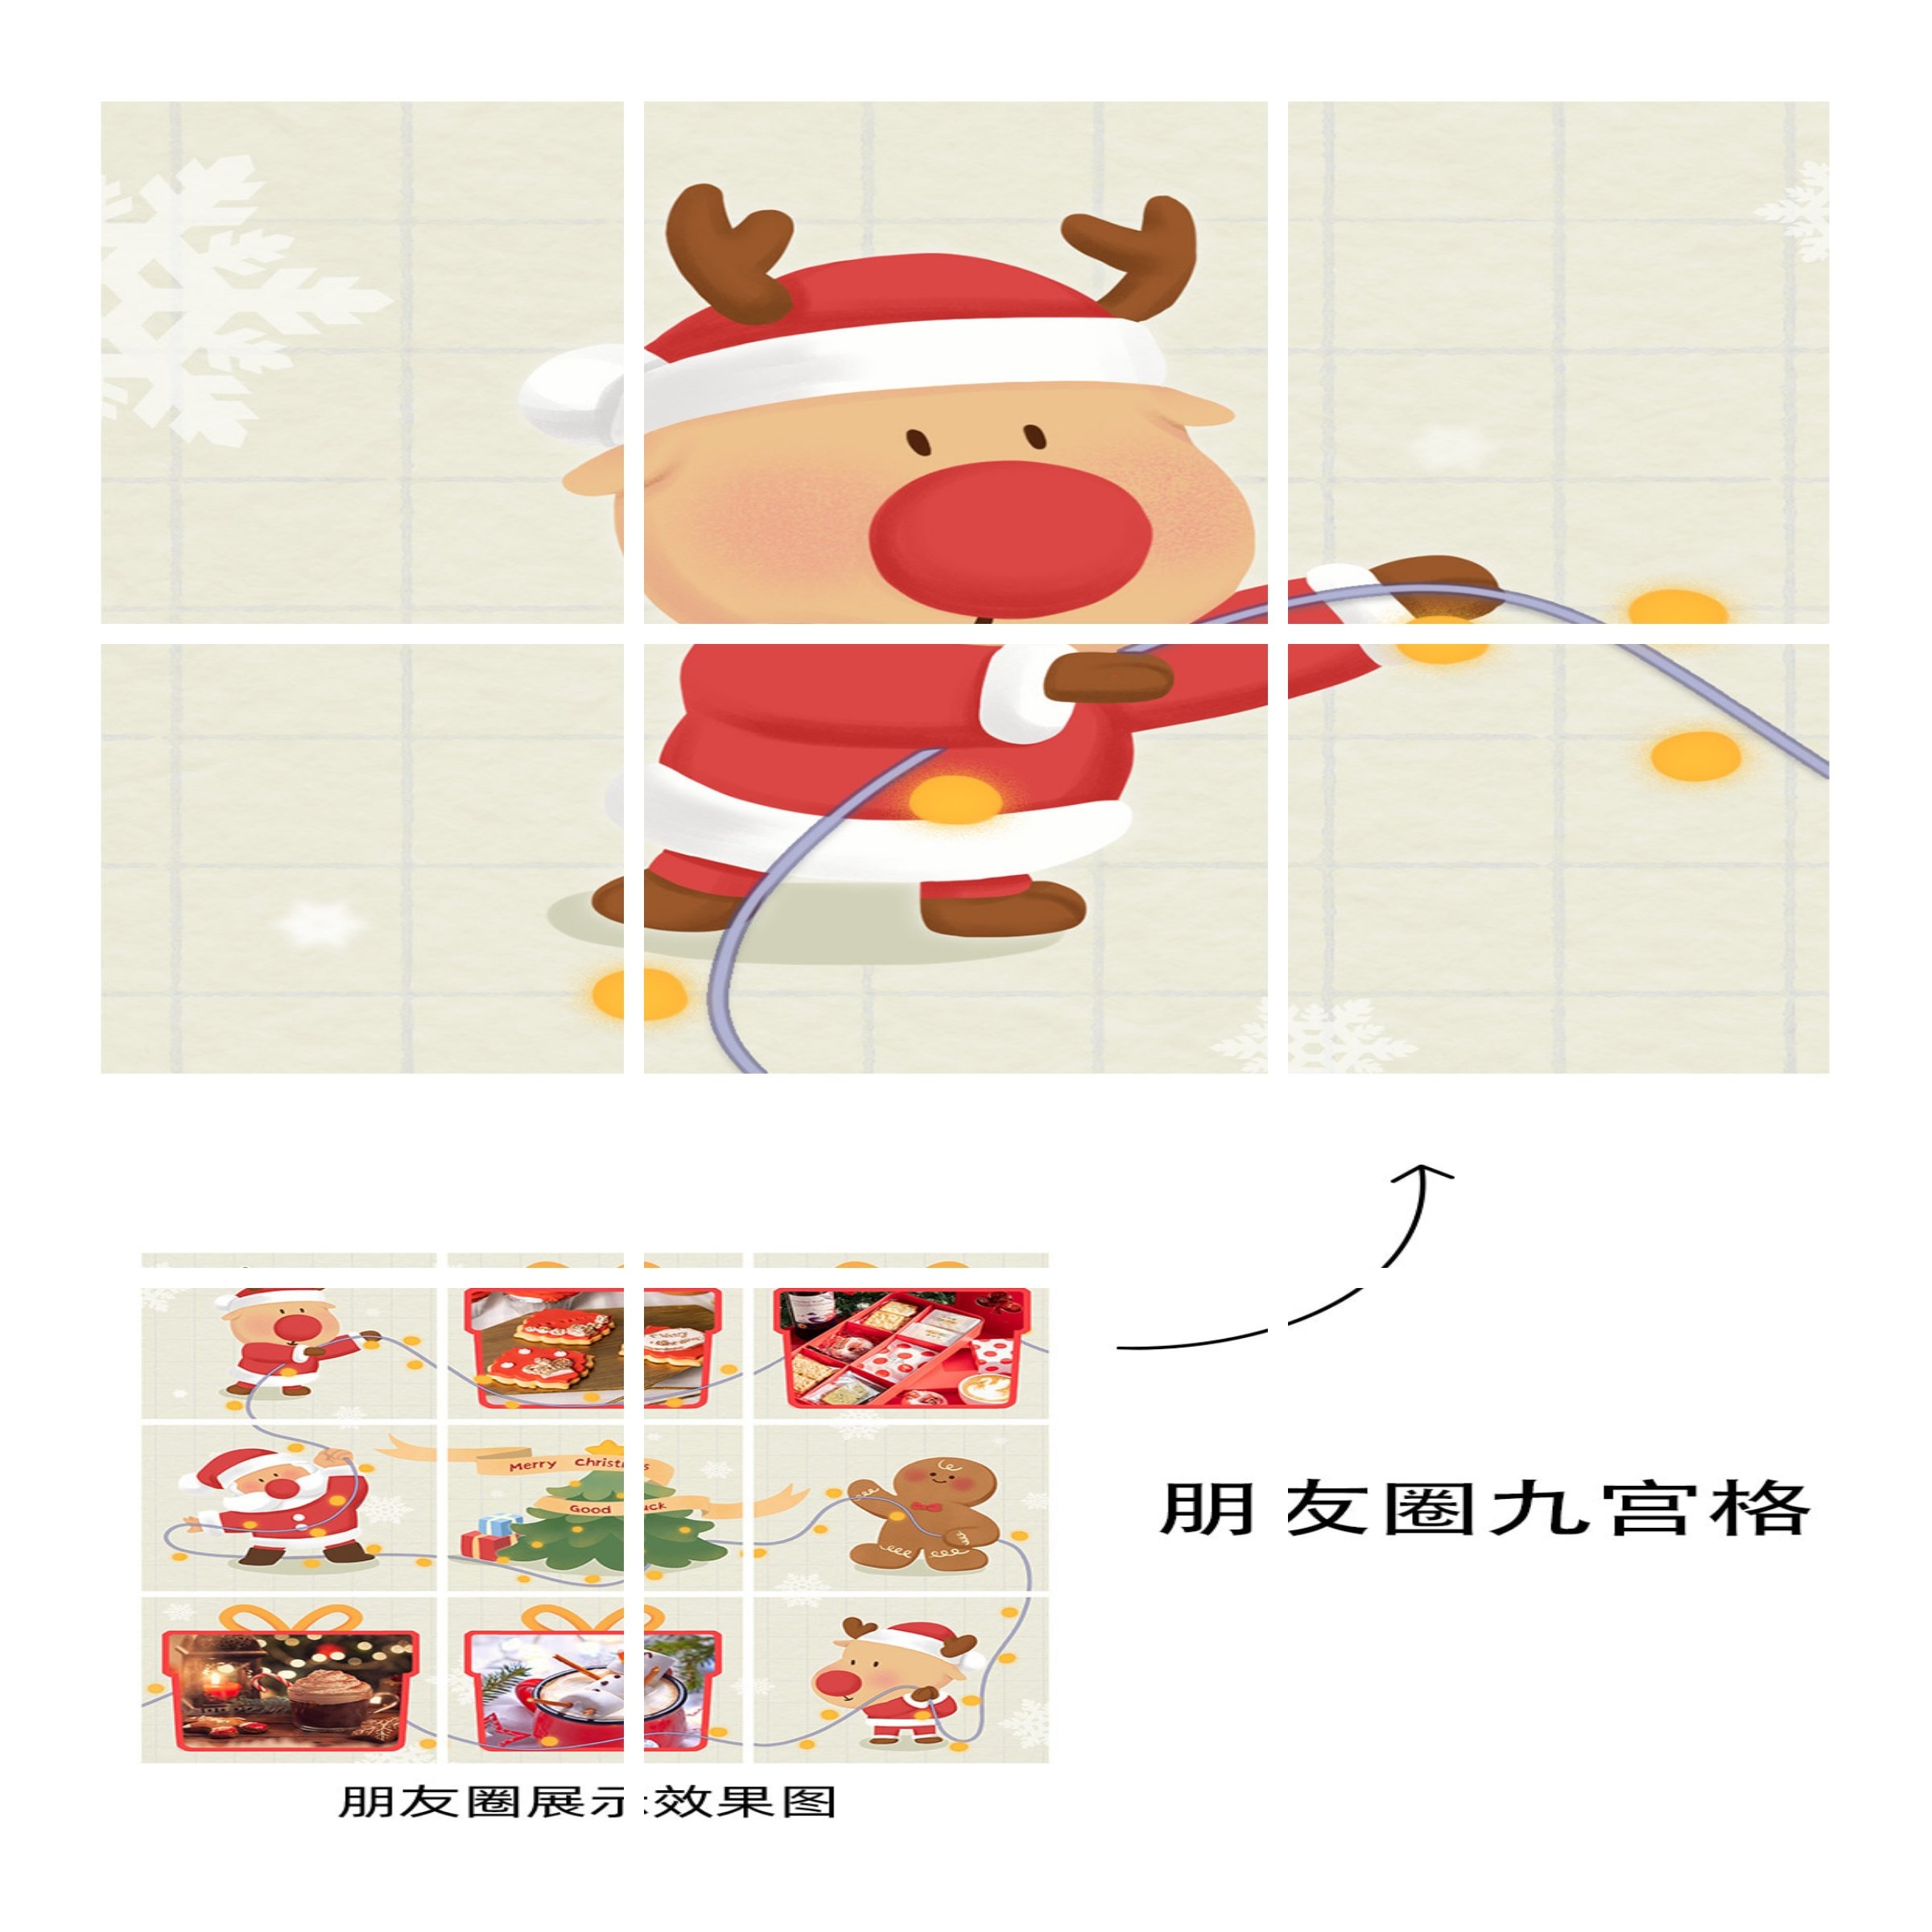 圣诞节产品展示九宫格可爱卡通01